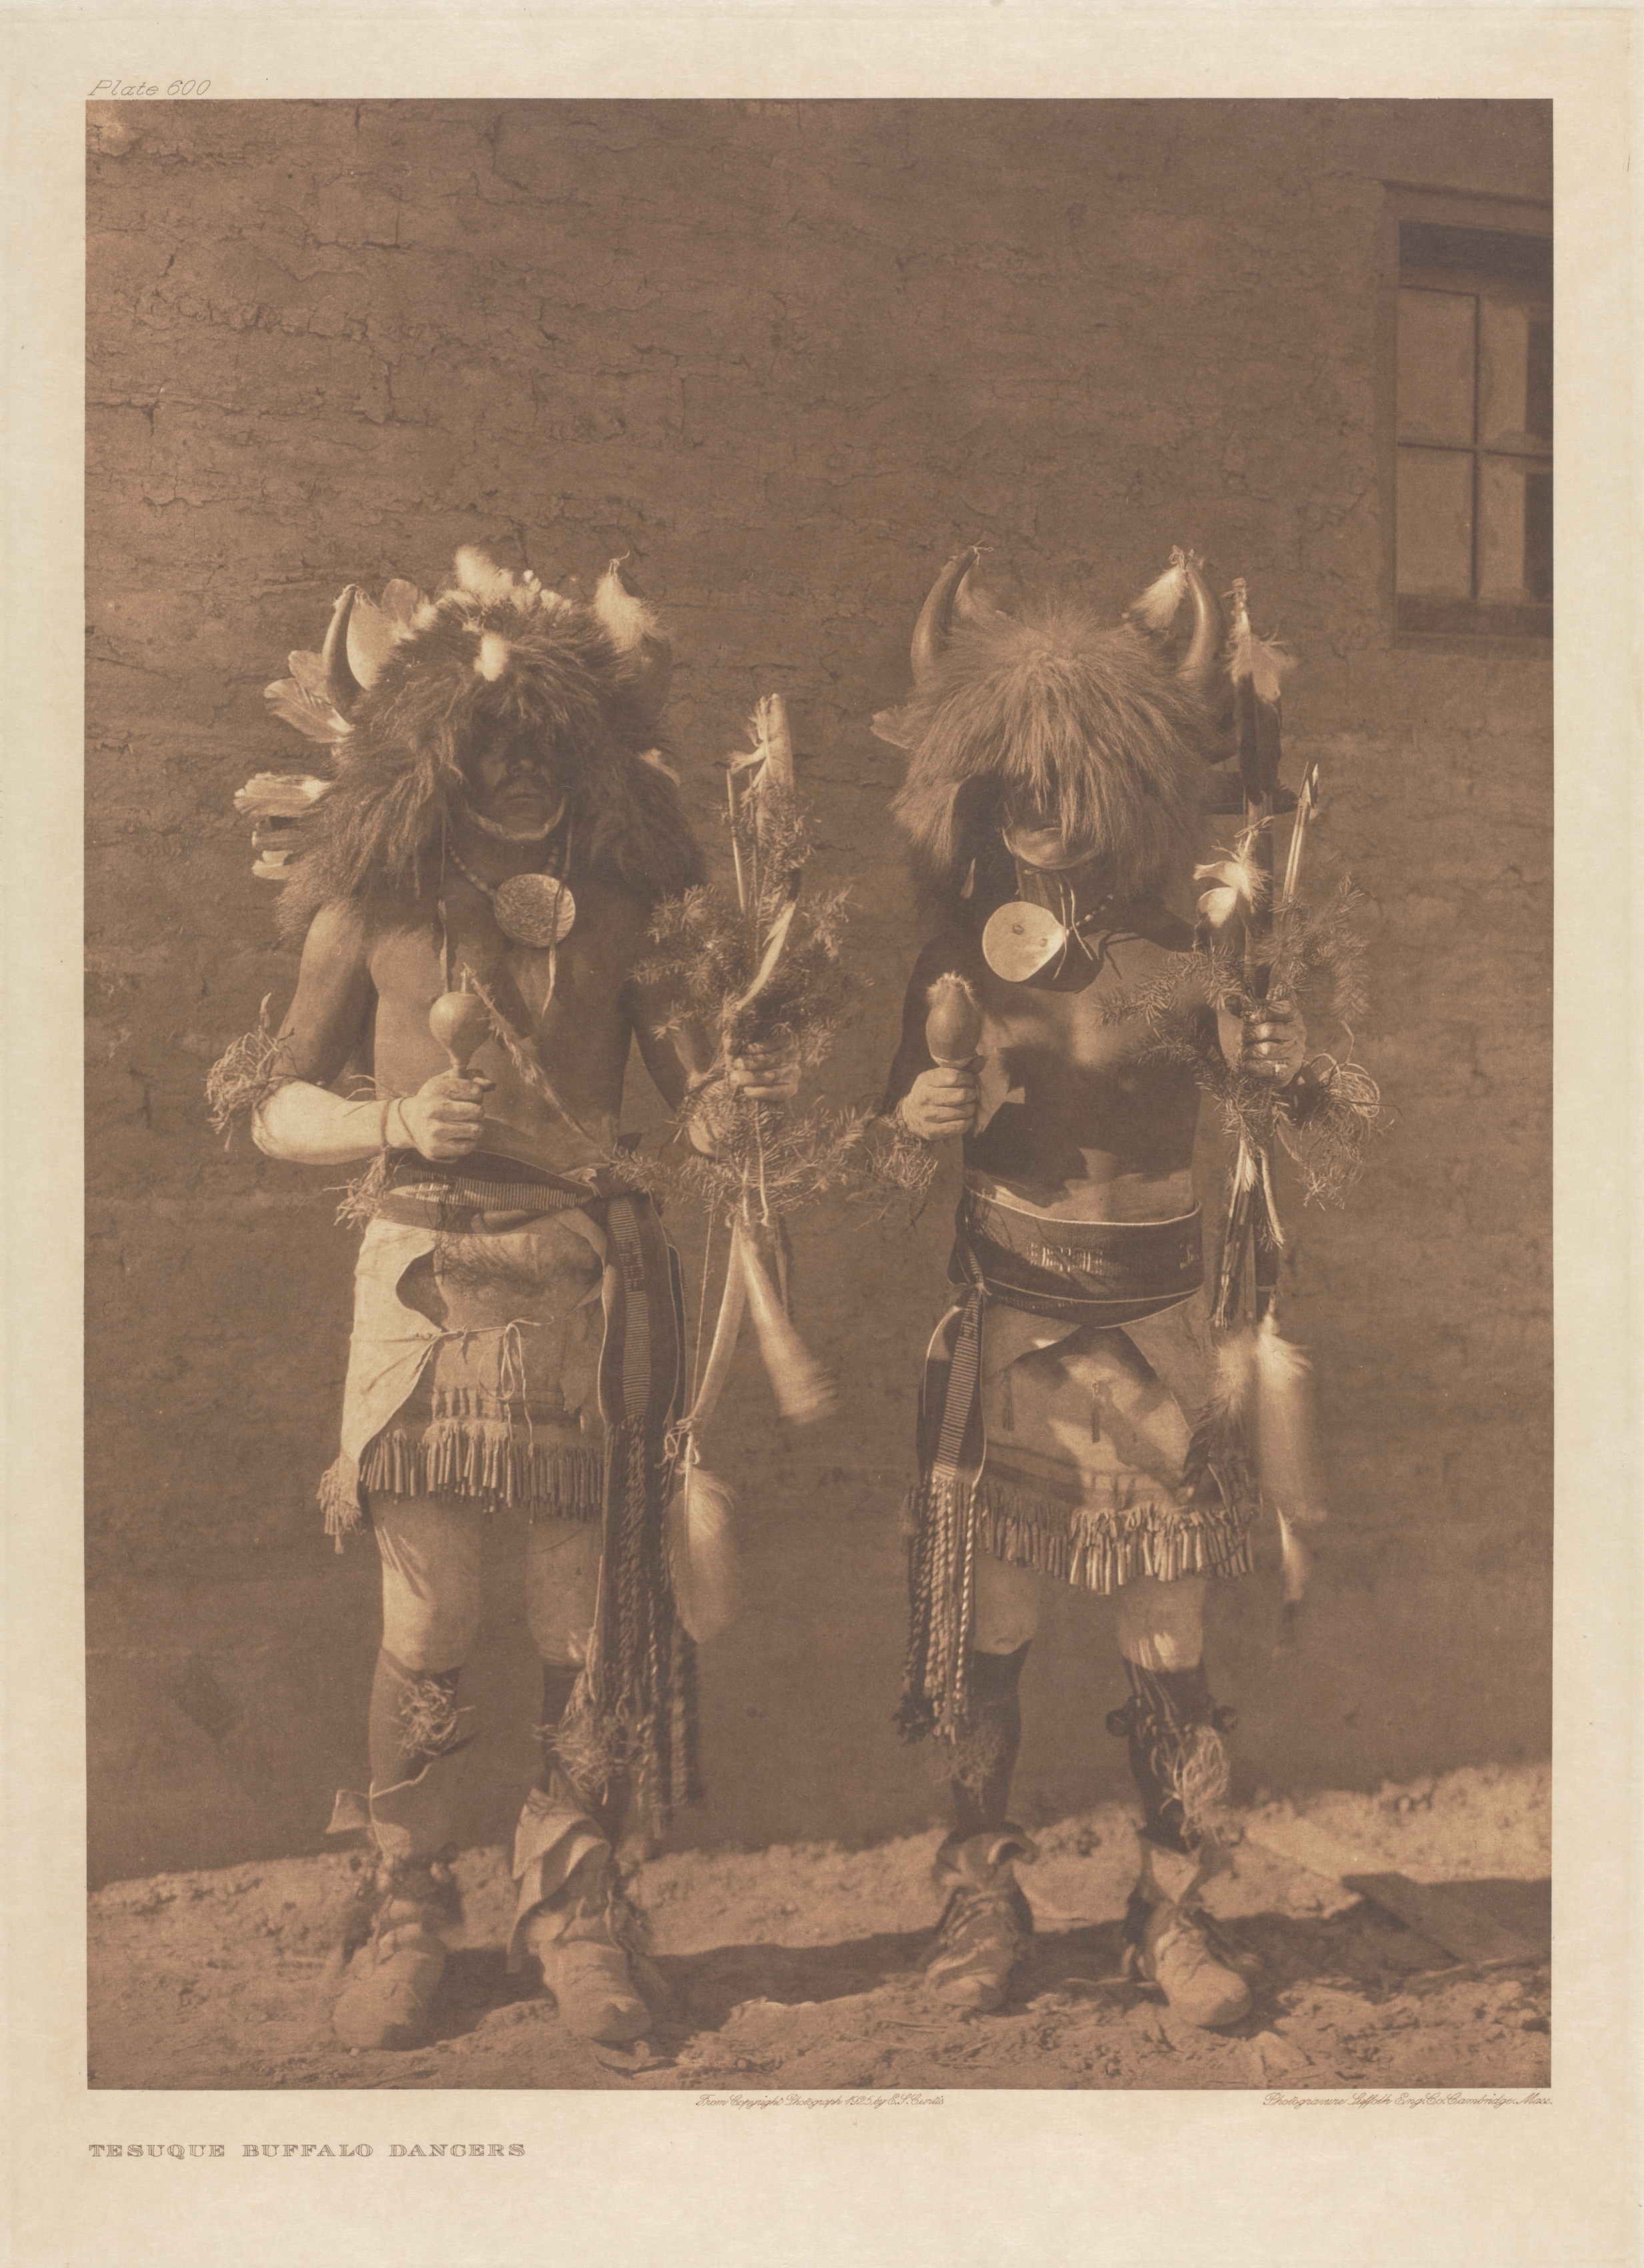 Portfolio XVII, Plate 600: Tesuque Buffalo Dancers